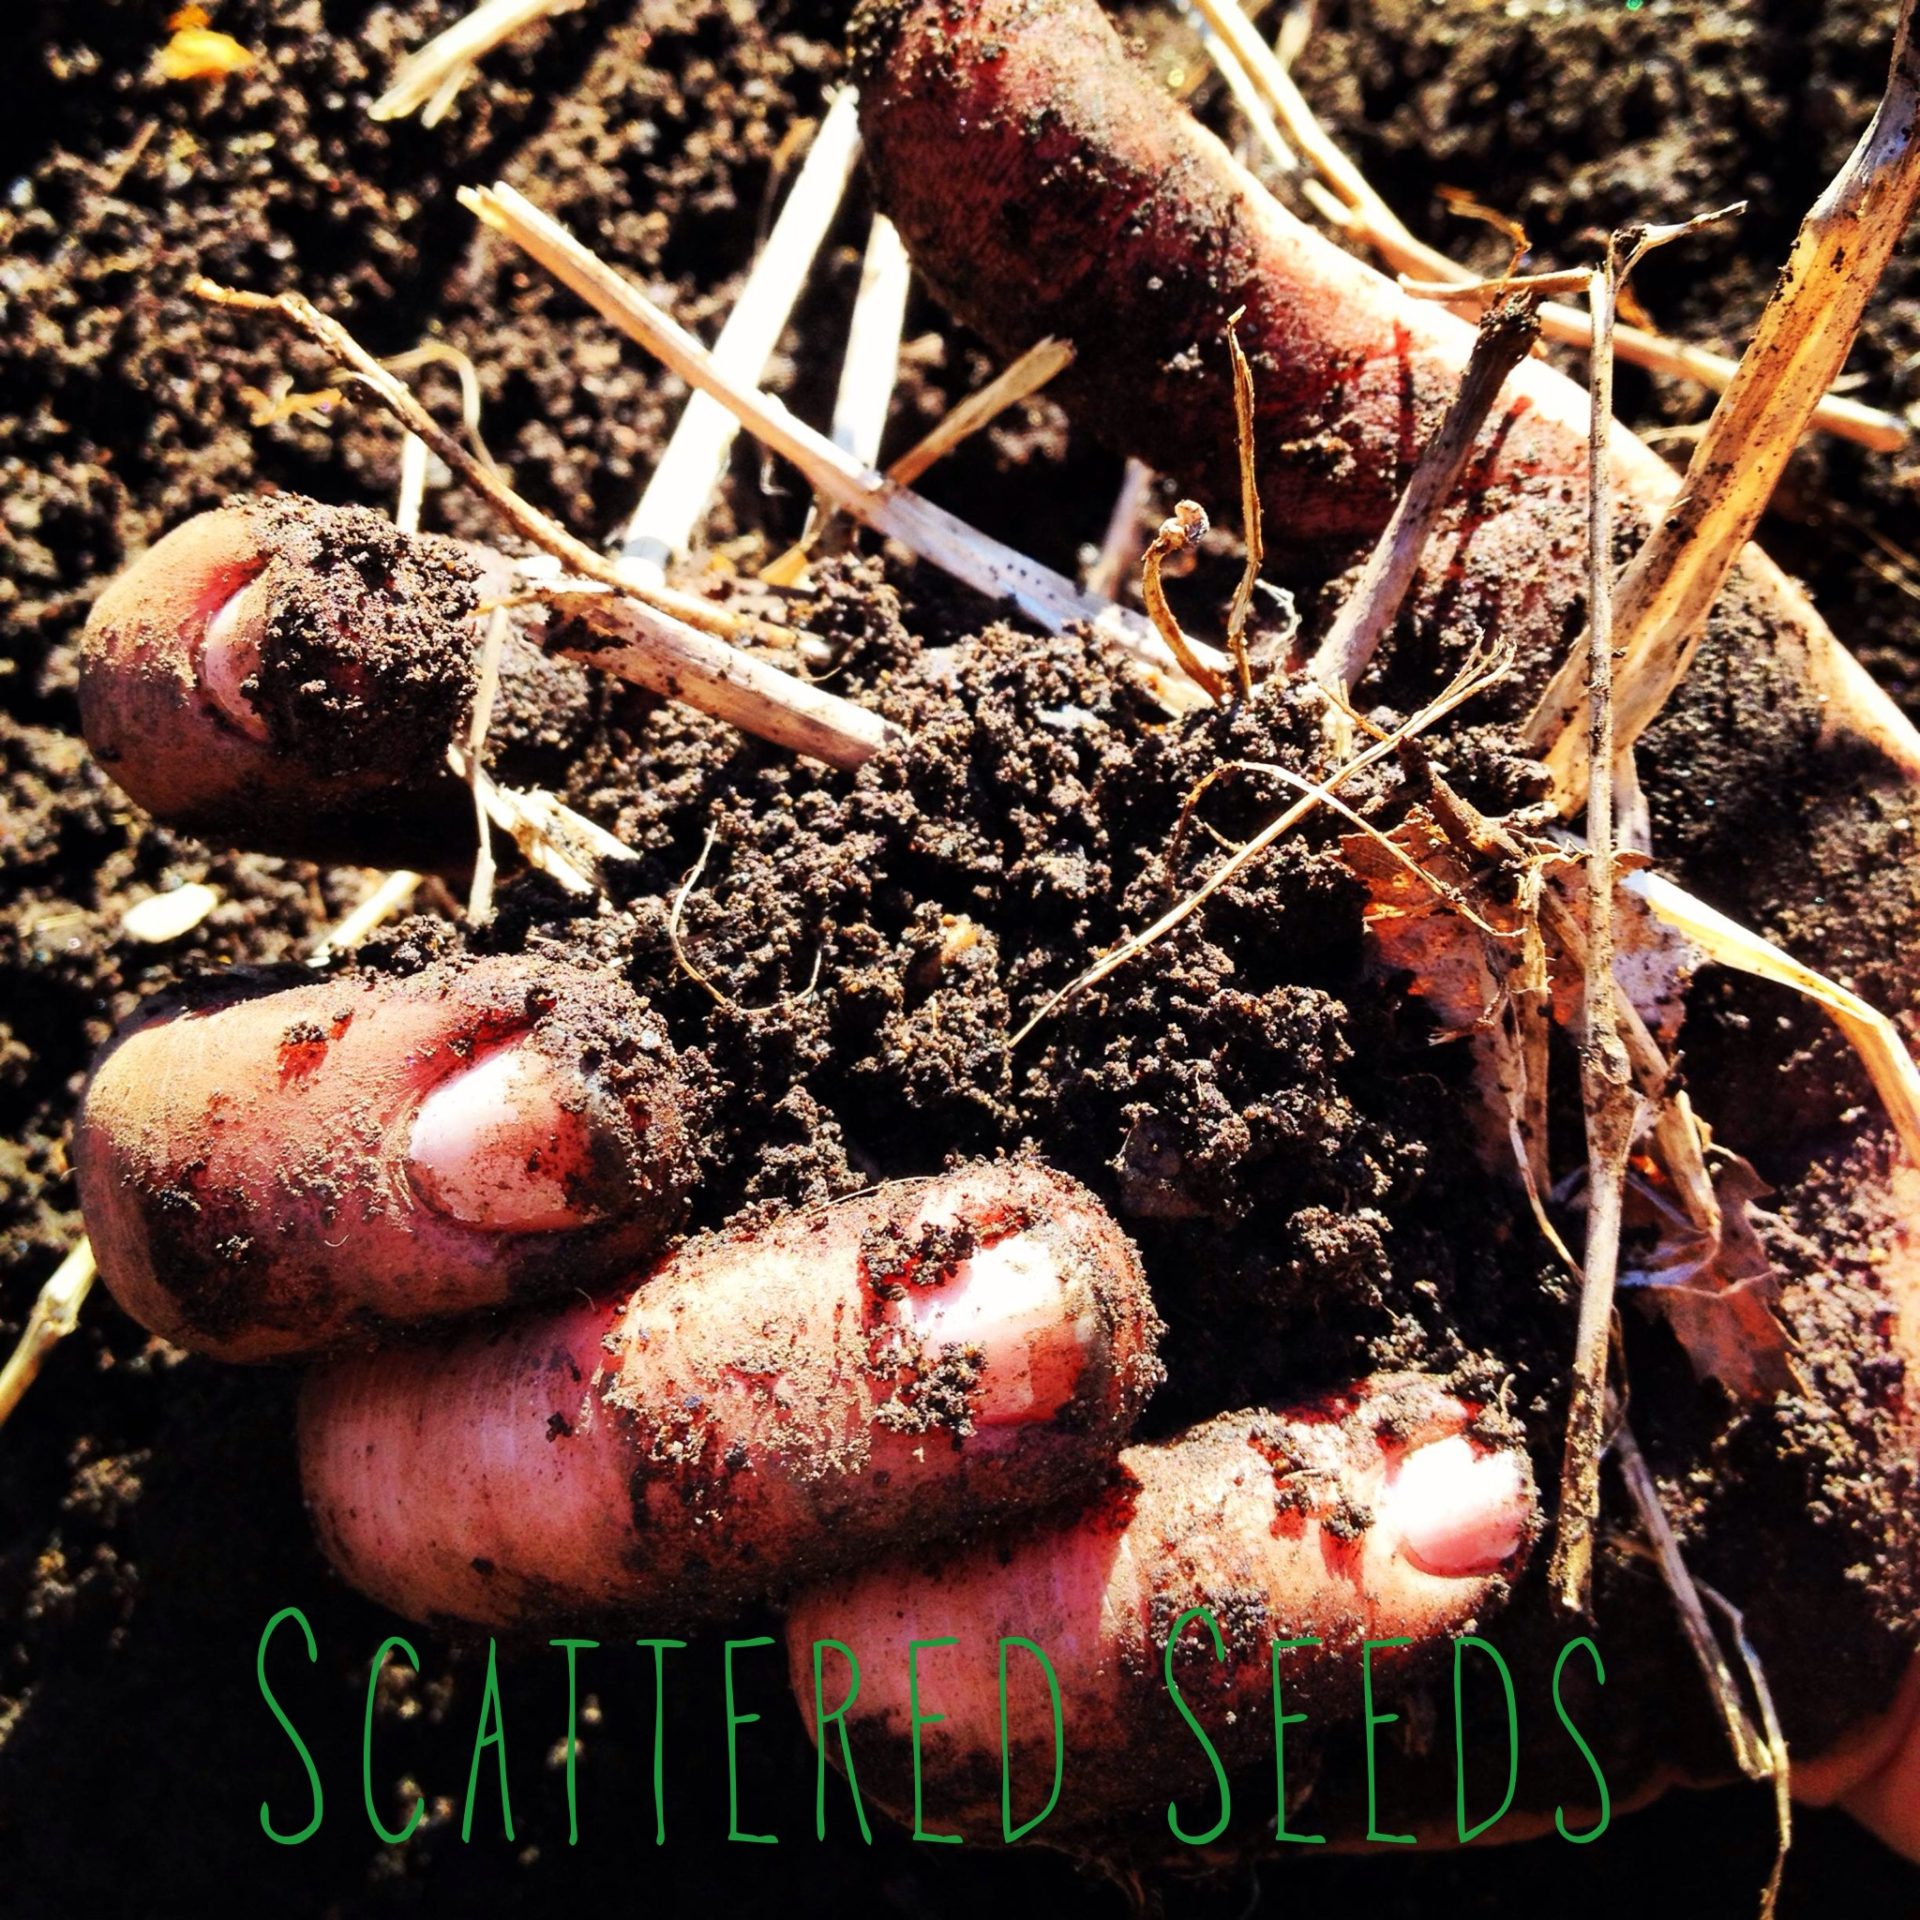 scattered seeds.jpg